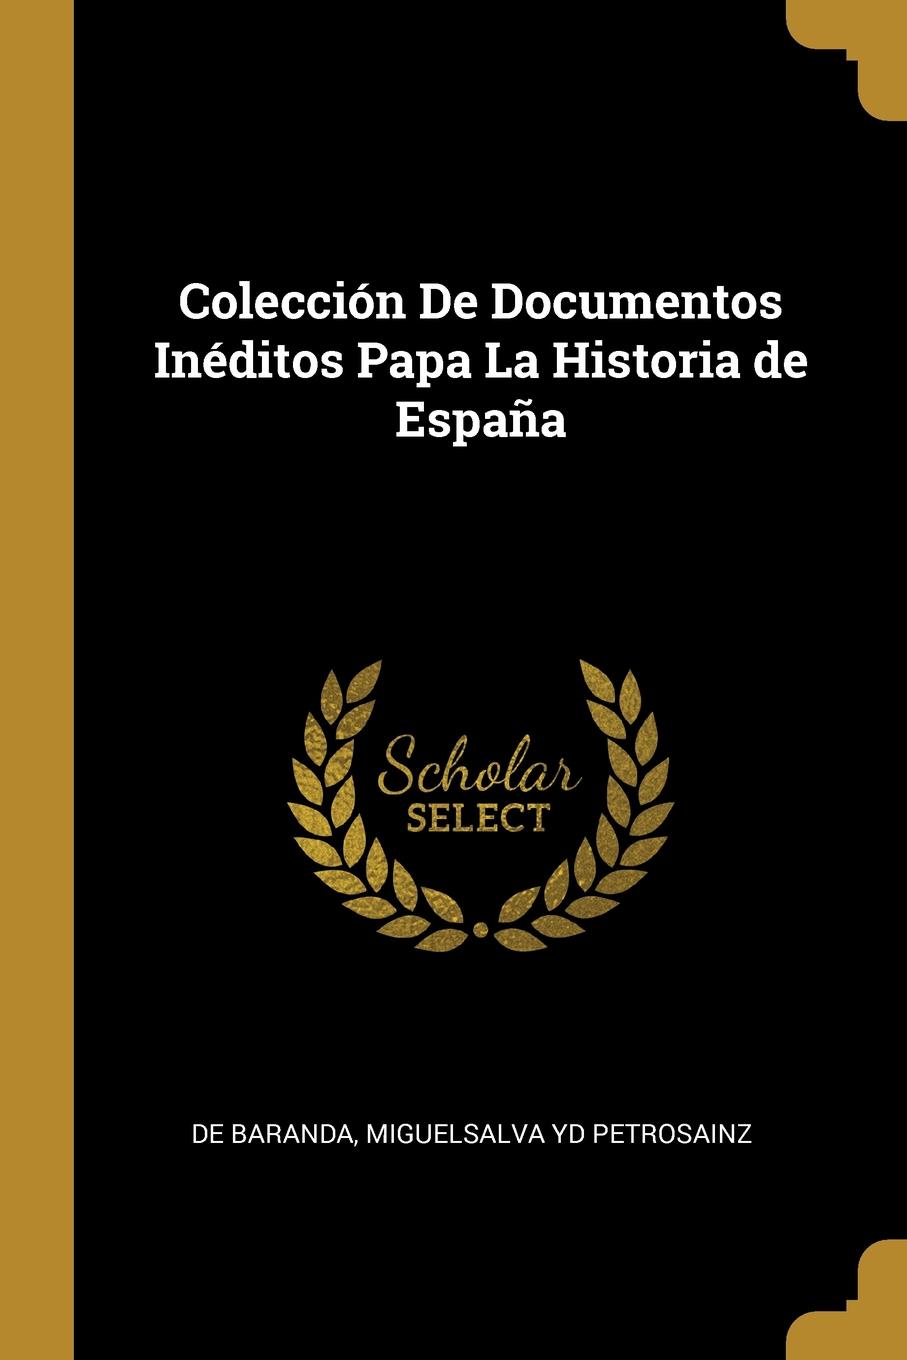 Coleccion De Documentos Ineditos Papa La Historia de Espana